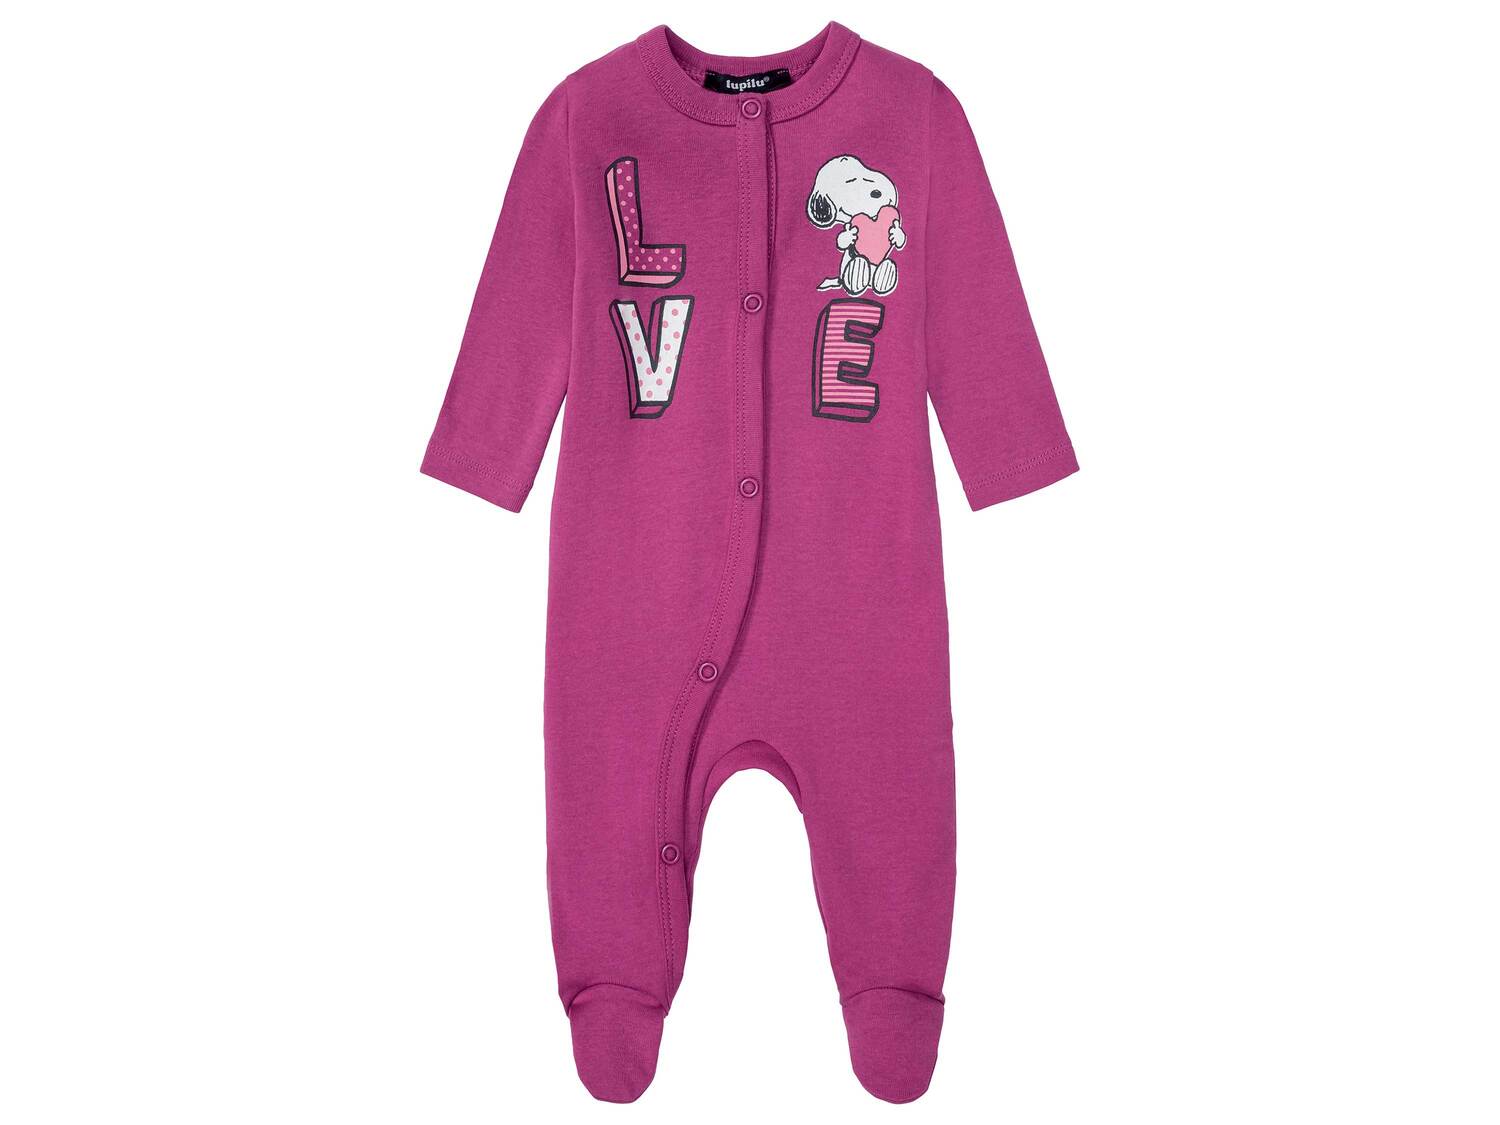 Pyjama bébé en coton bio , le prix 4.99 € 
- Du 0-2 mois au 12-14 mois selon ...